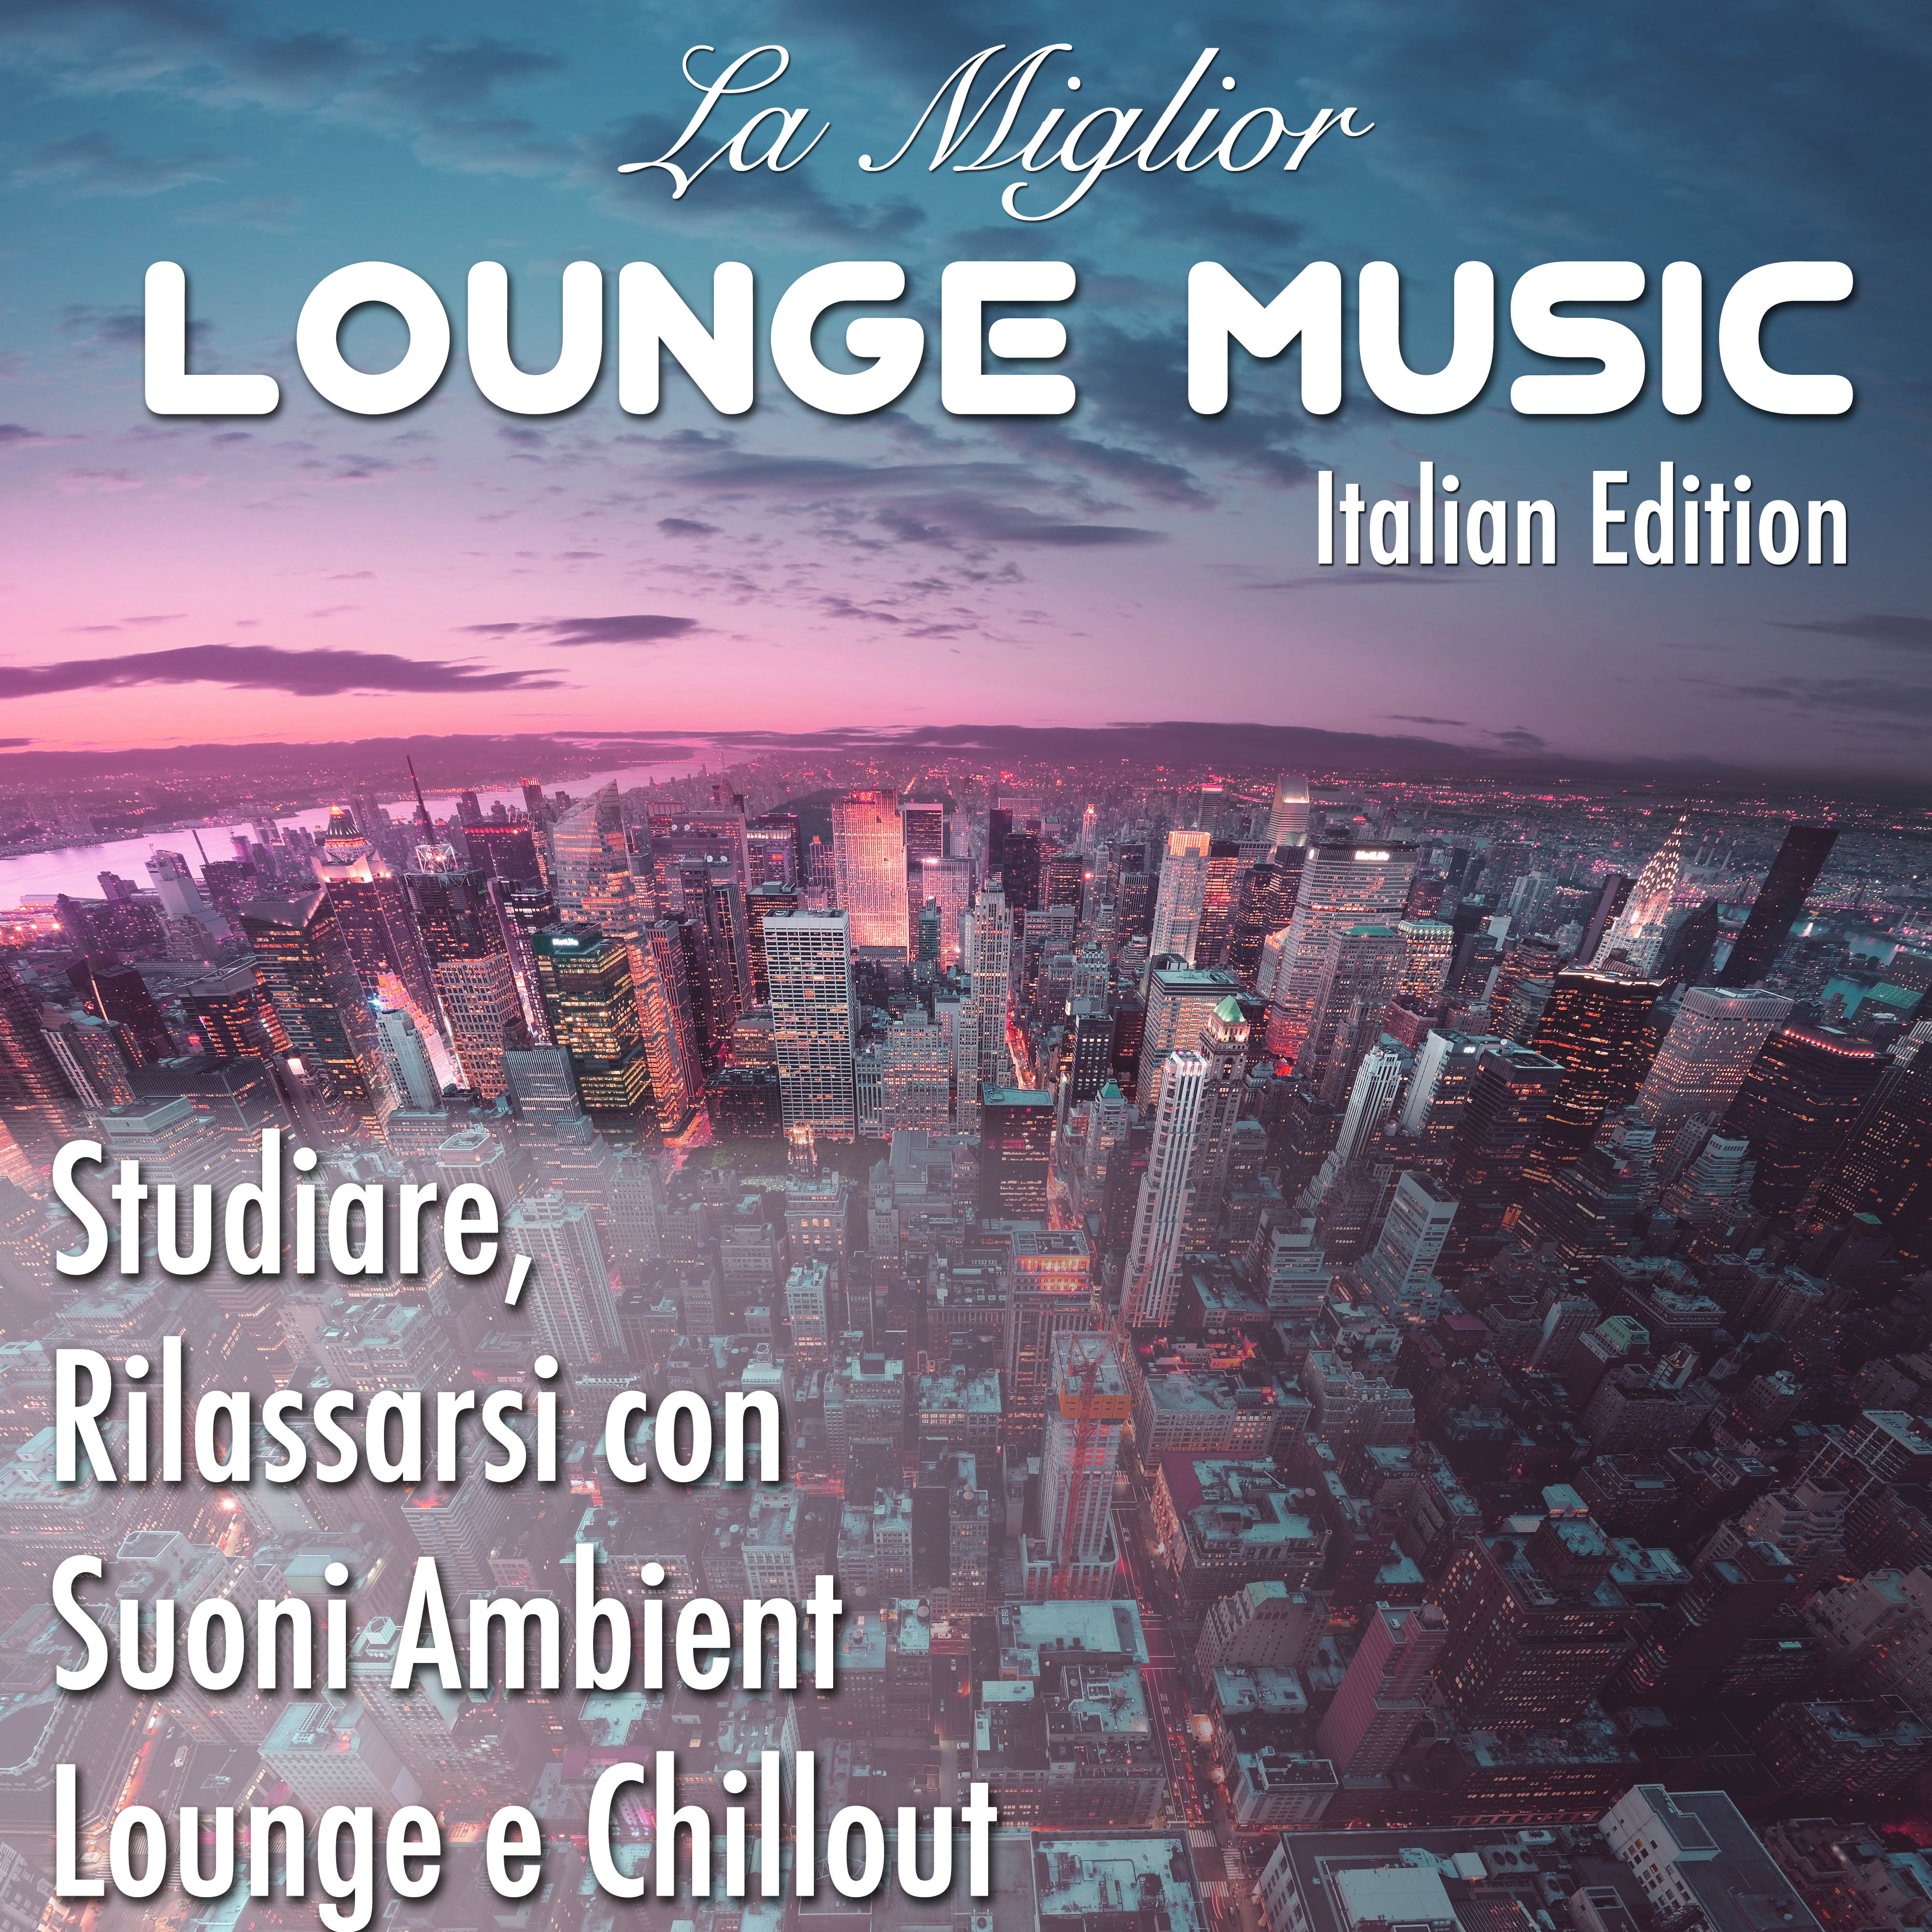 Lounge Music, Italian Edition - Le Migliori Tracce per Studiare, Rilassarsi con Suoni Ambient, Lounge e Chillout